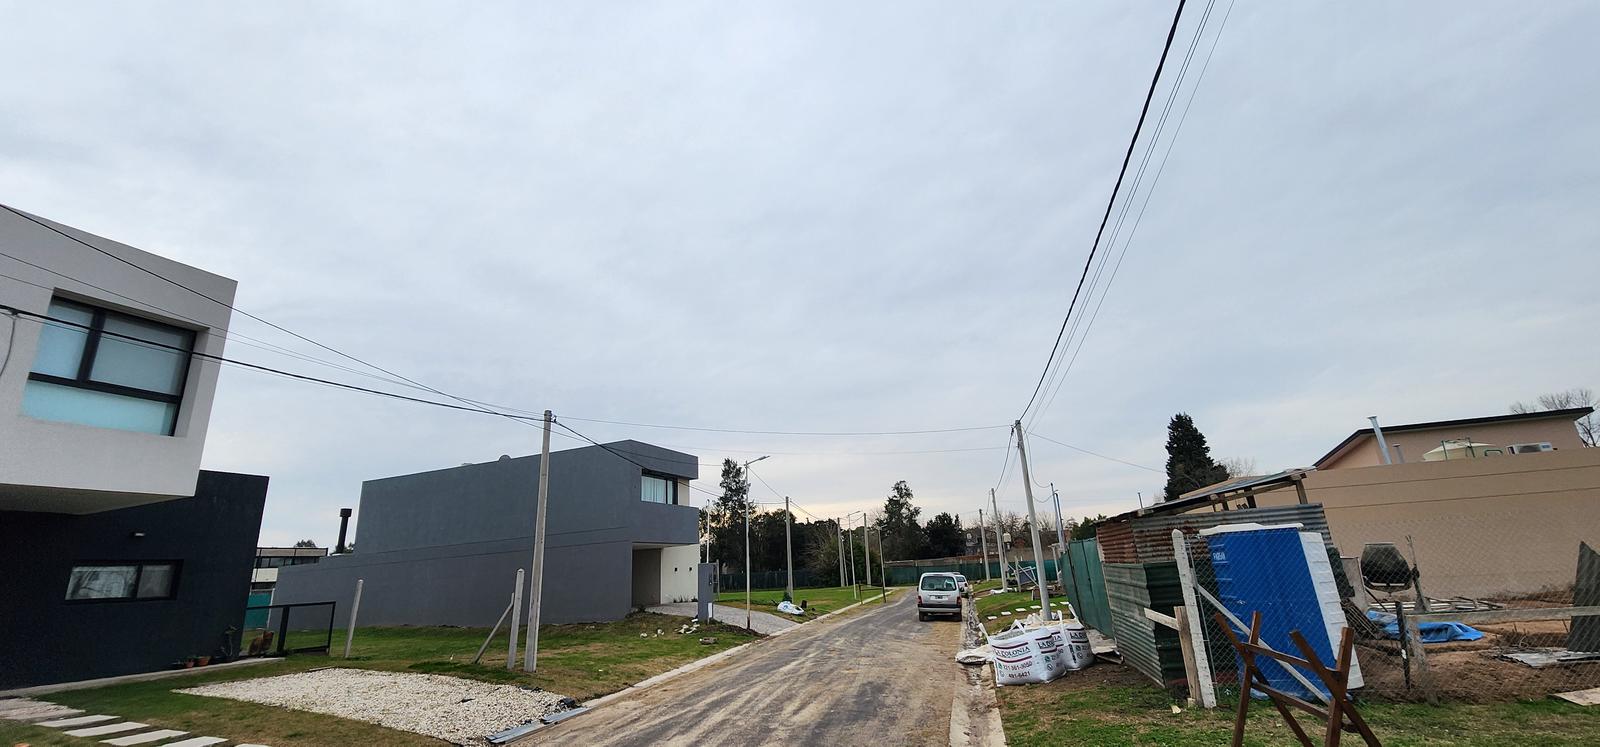 Terreno (lote) de 333 m2 en venta en Quintas de Mitre barrio cerrado Joaquin Gorina